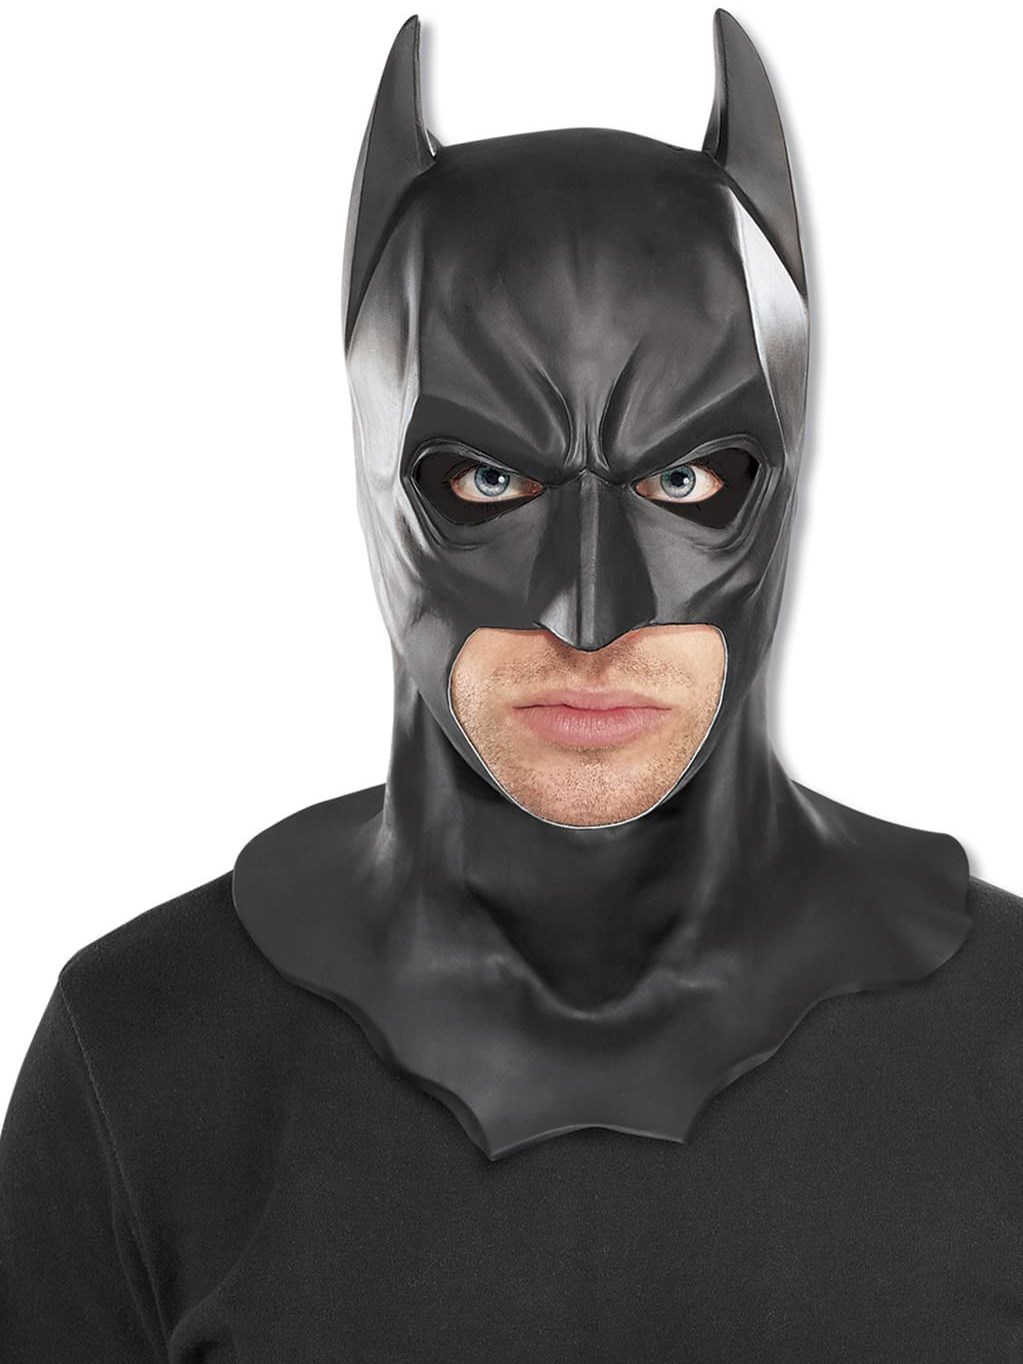 Batman The Dark Knight Rises Adult Full Mask